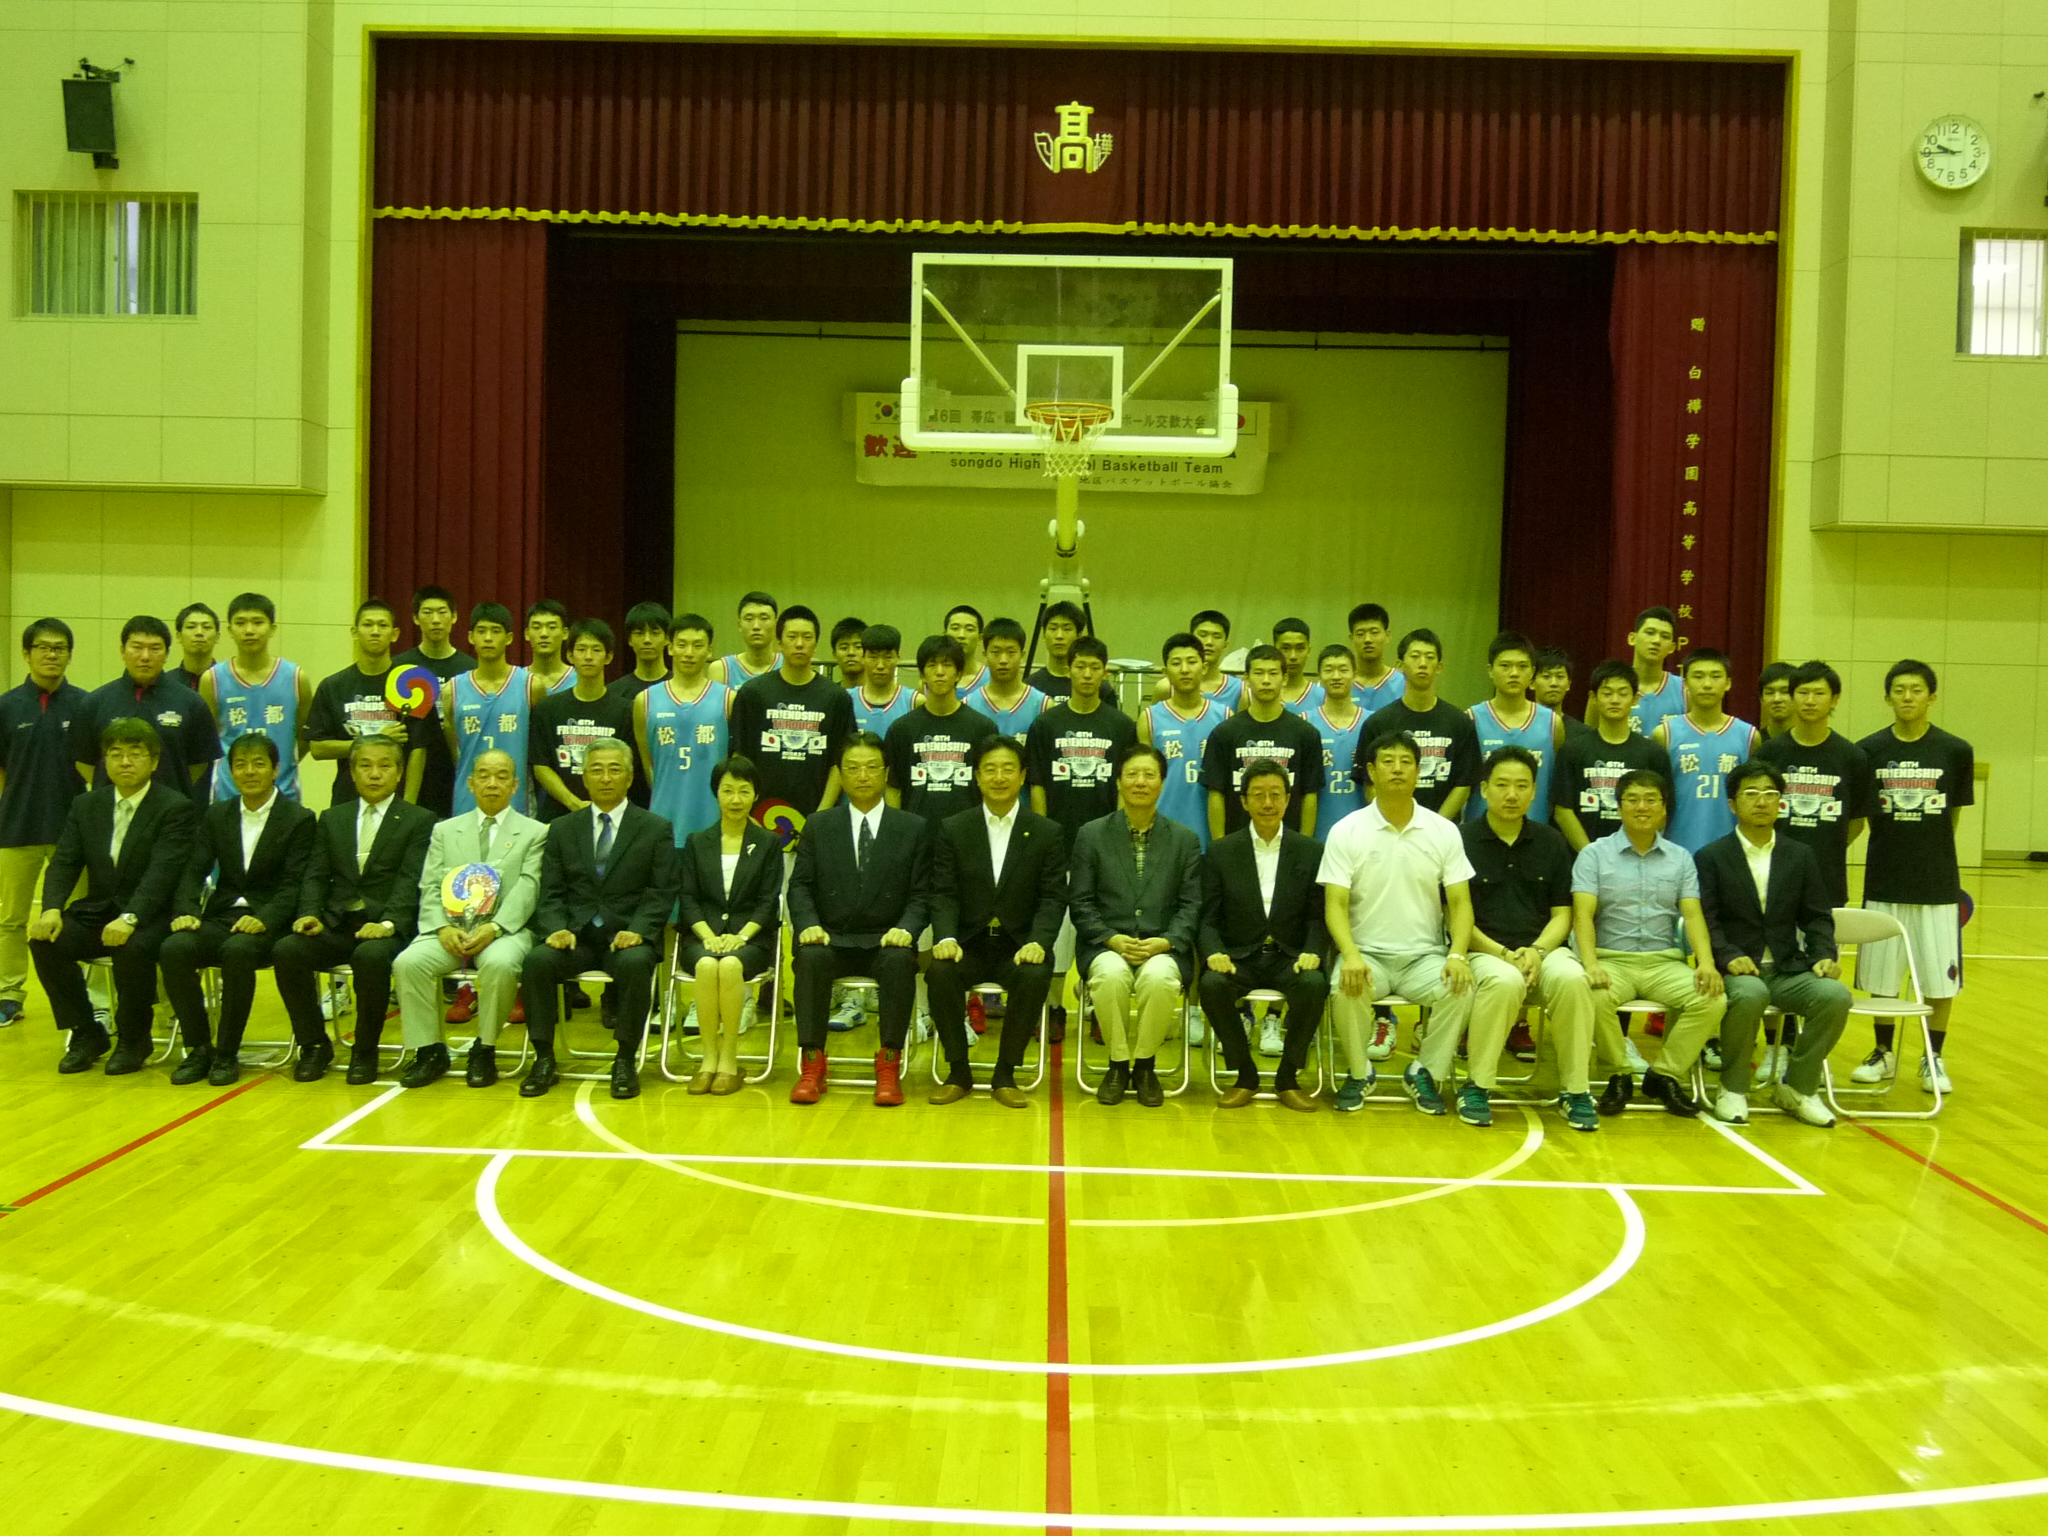 第6回帯広 韓国高校生バスケットボール交歓大会 大会結果 写真 財団杯 一般財団法人帯広市文化スポーツ振興財団